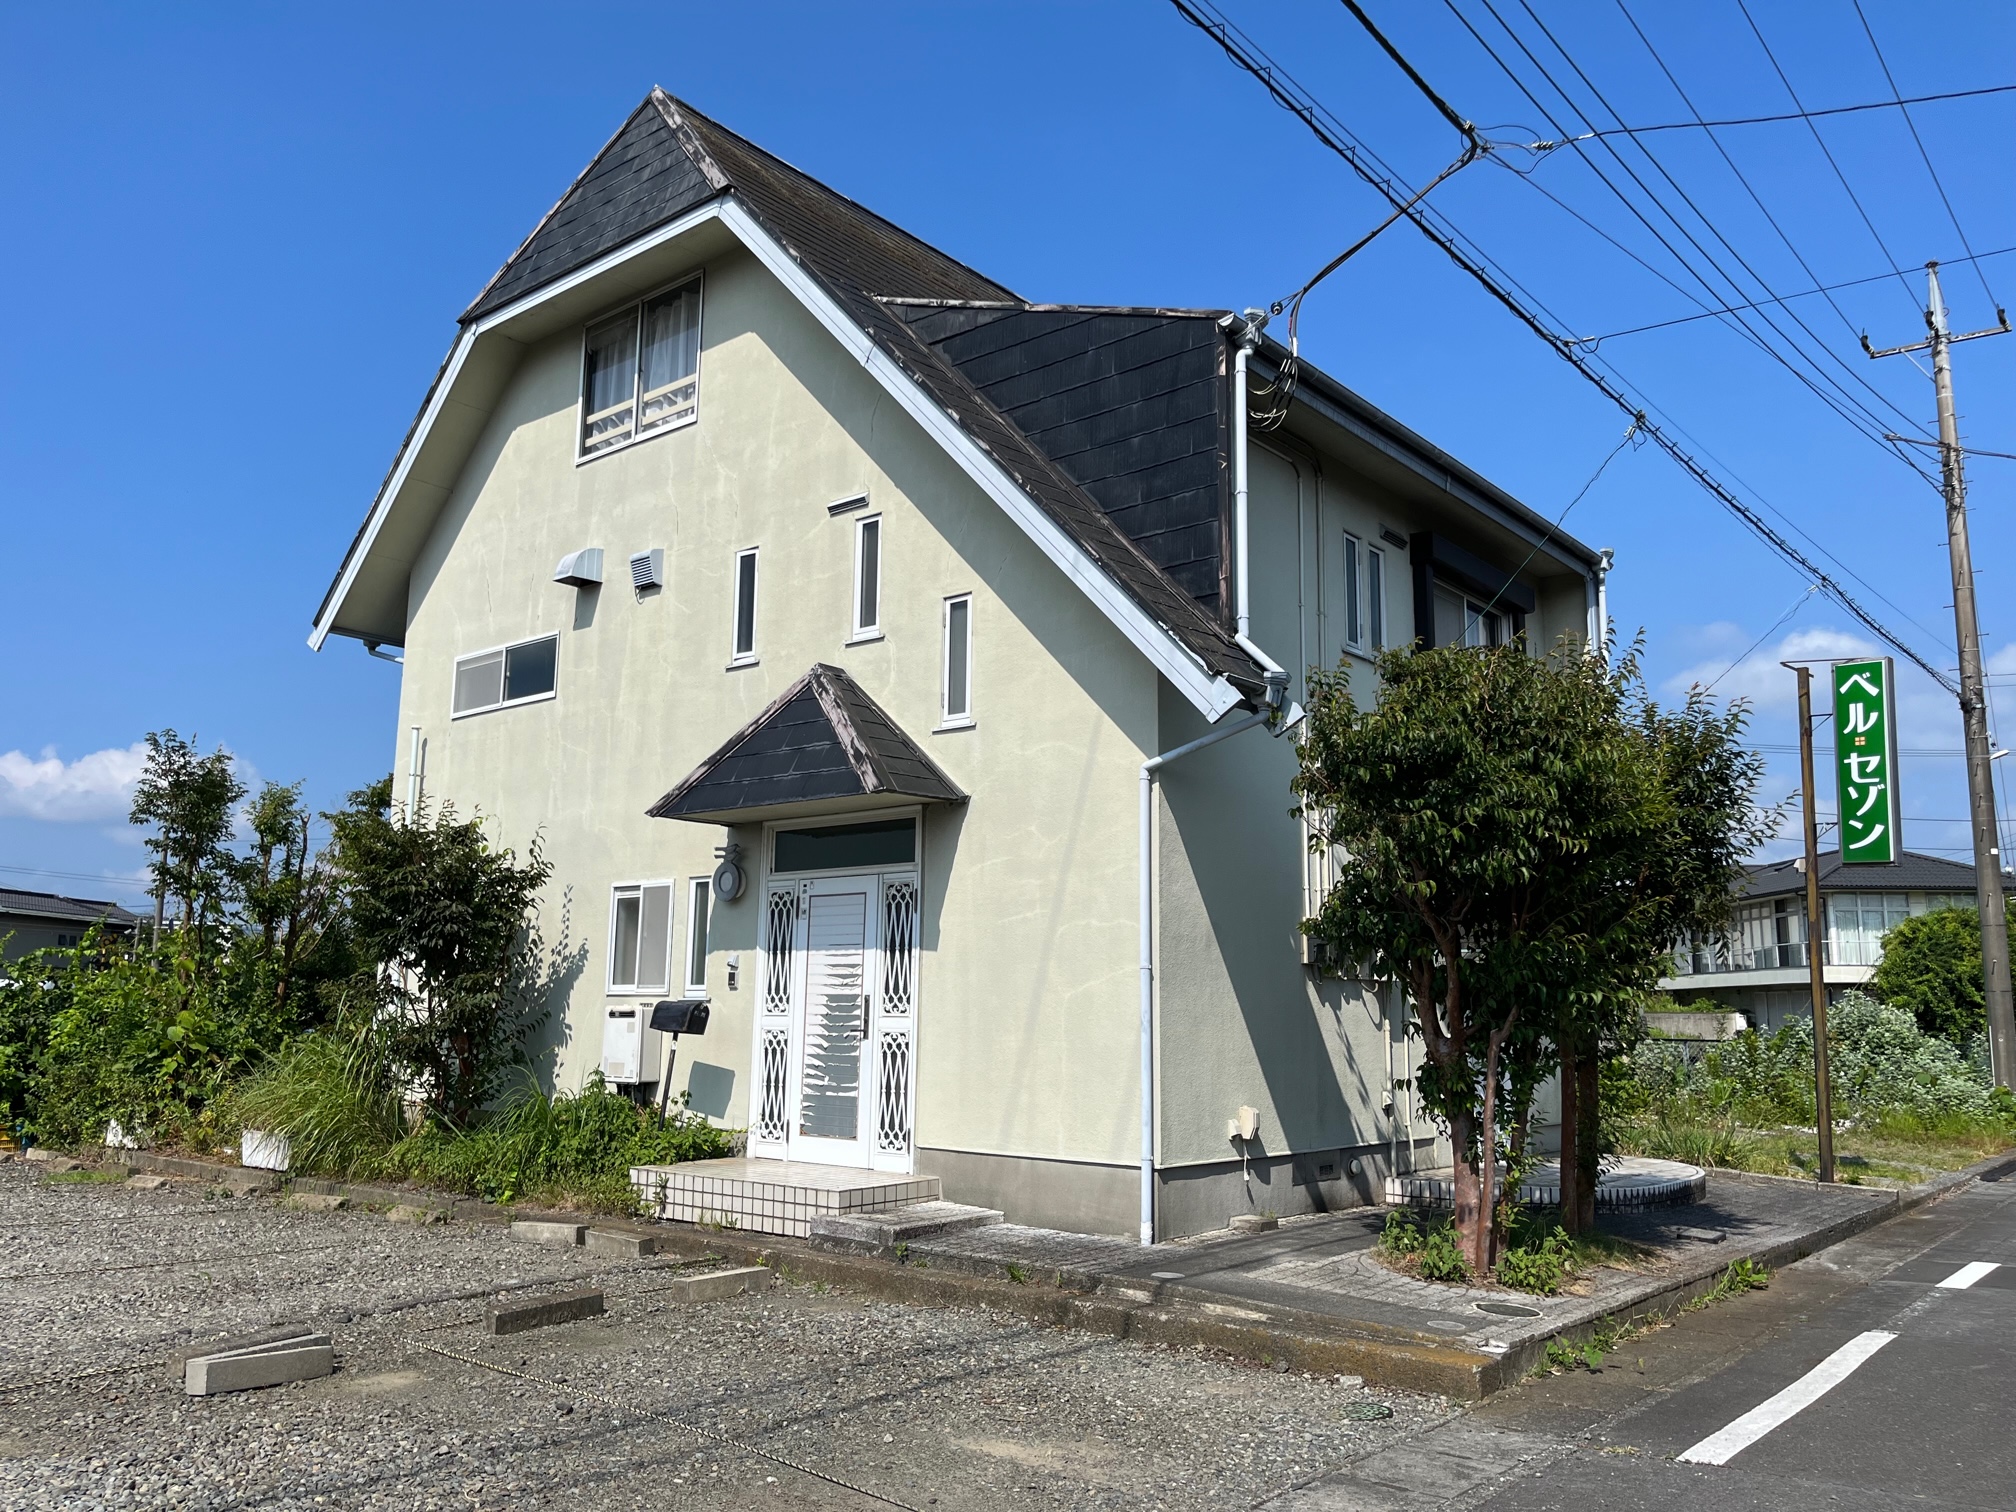 【ご成約情報】富士宮市前田町中古住宅はおかげさまでご成約となりました。                                    ありがとうございました。